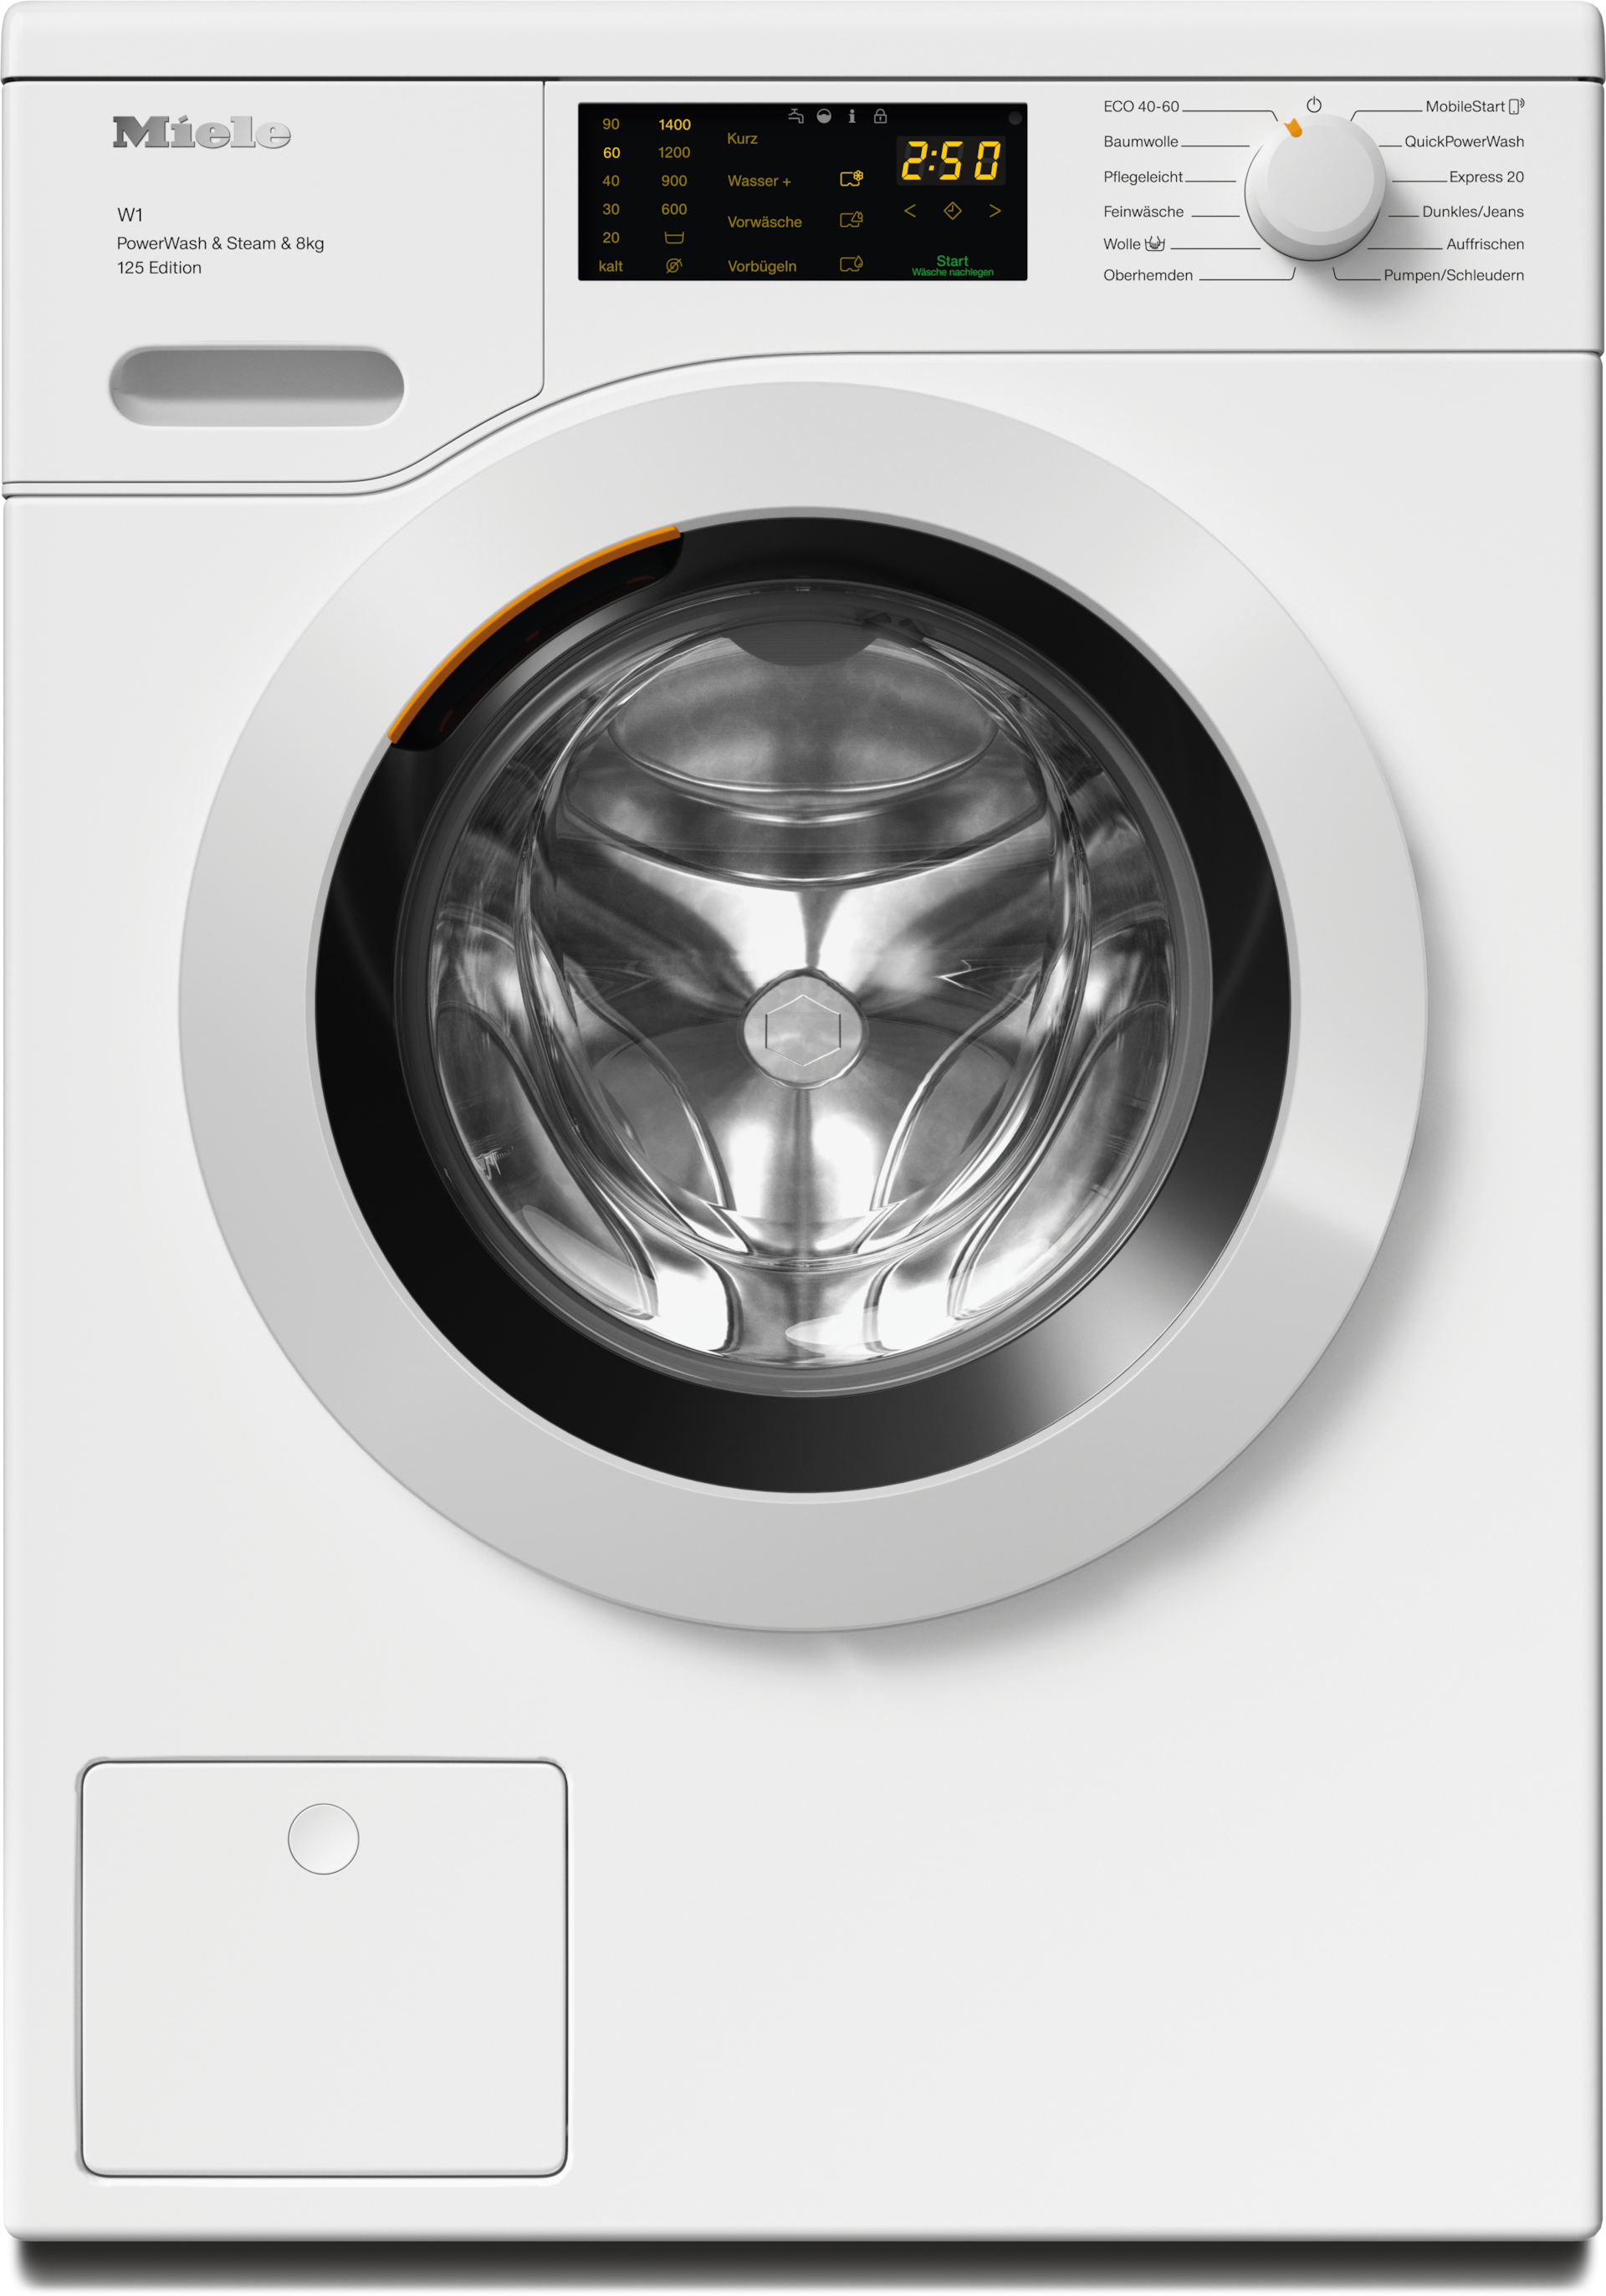 Waschmaschinen - WCB380 WPS 125 Edition Lotosweiß - 1